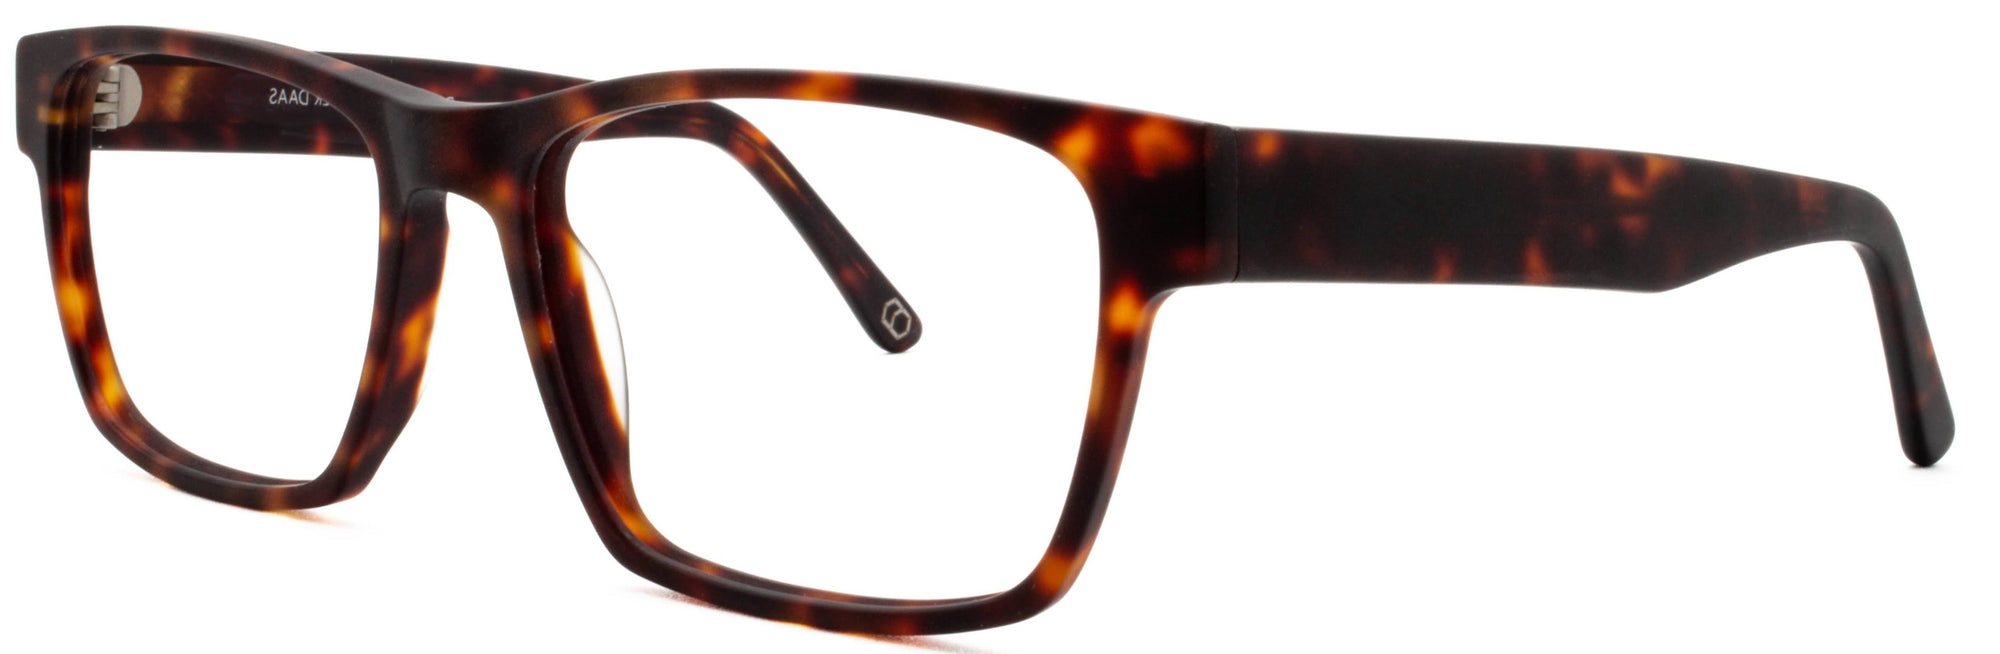 Alexander Daas - Remy Eyeglasses - Tortoise - Side View